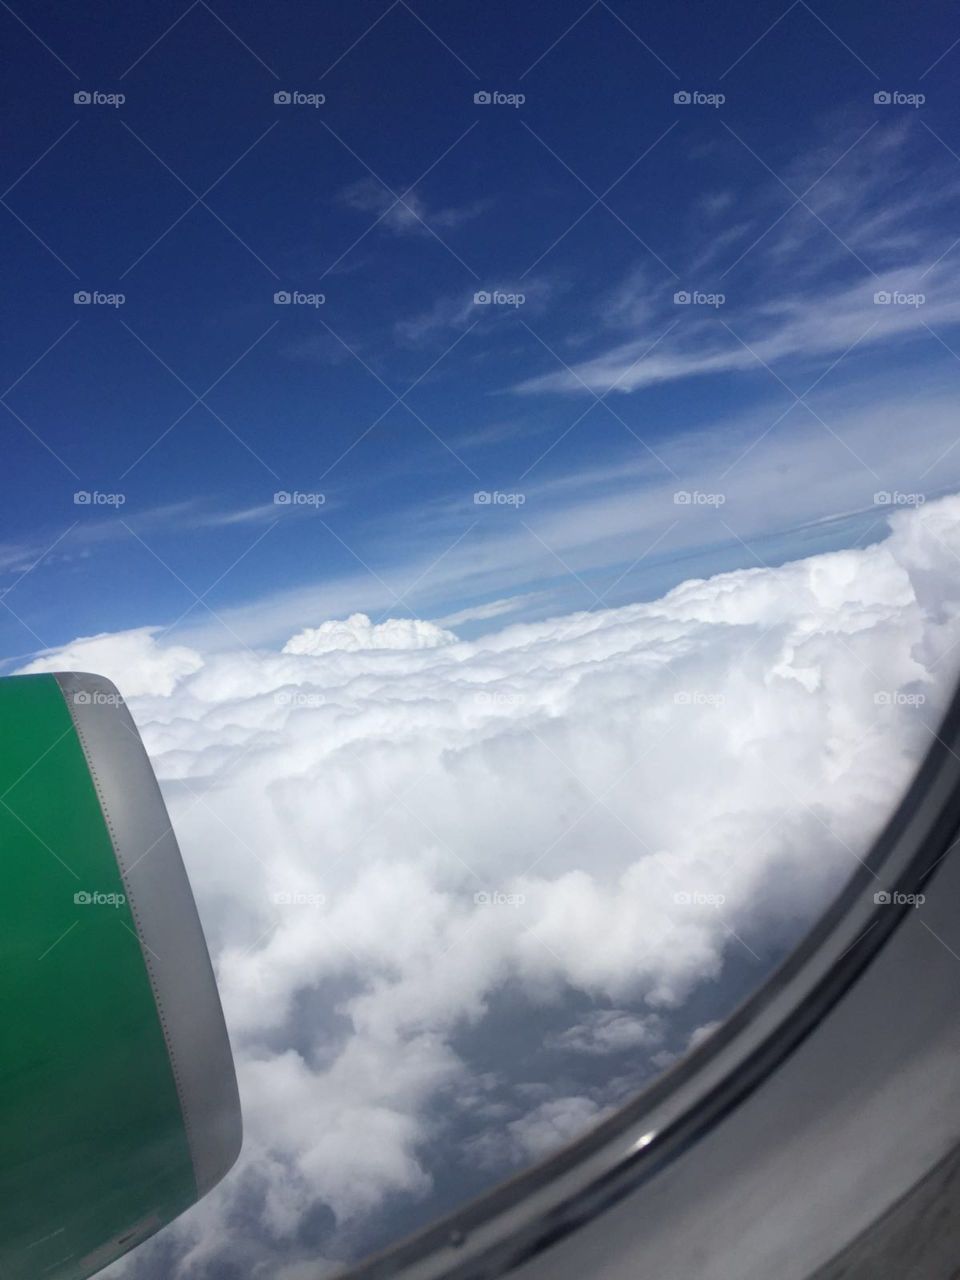 Airplane window cloud 